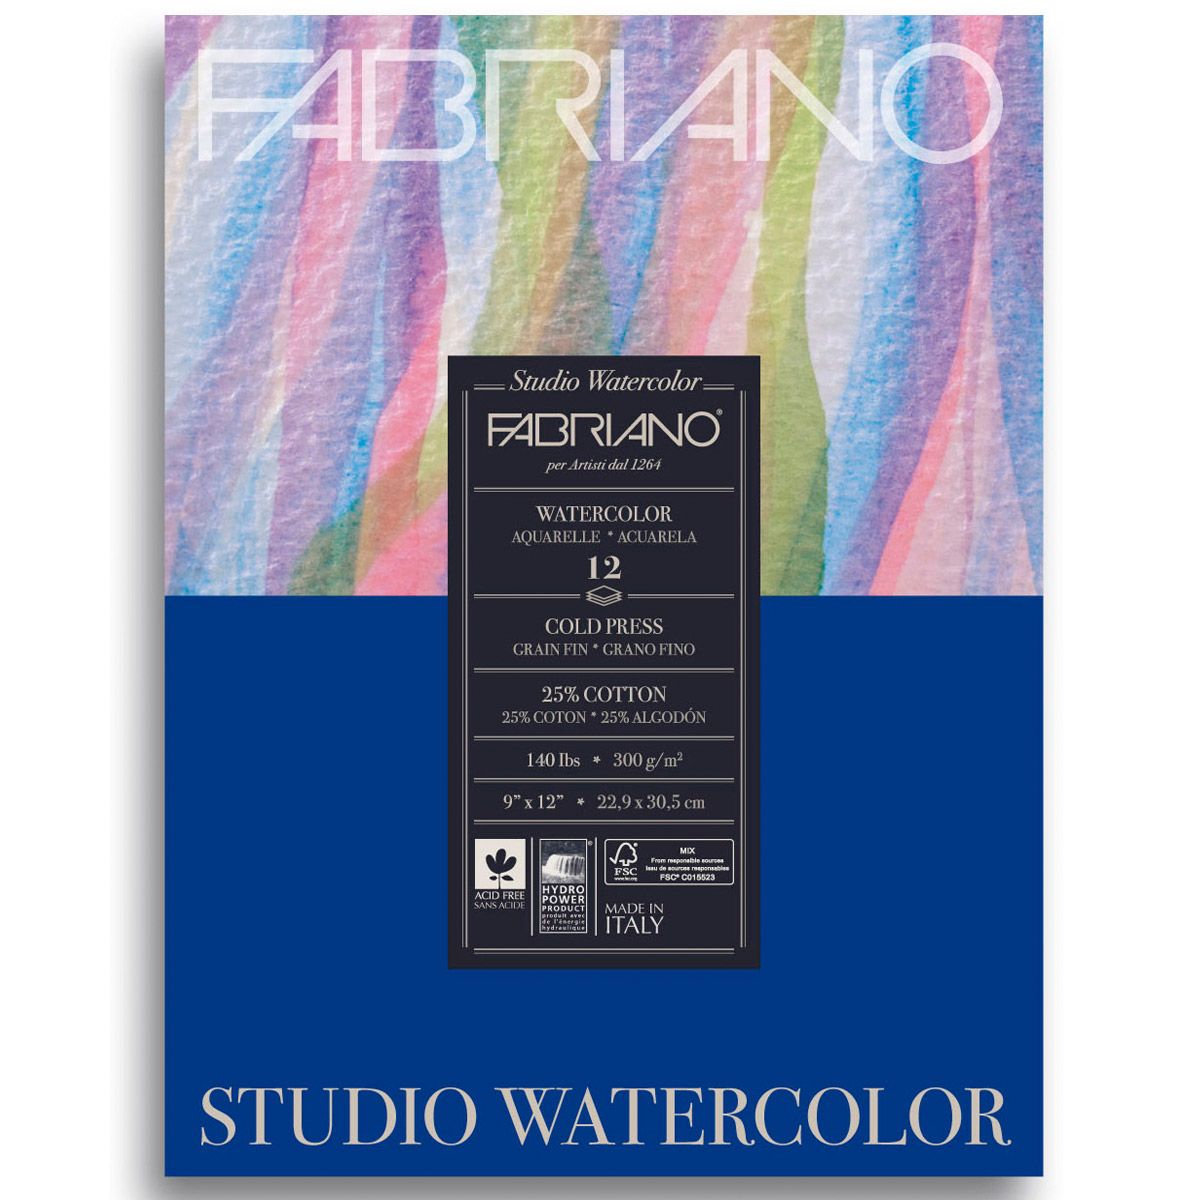 Fabriano Studio Watercolour CP 12 Shts. Pad, 140lb 9x12 inch